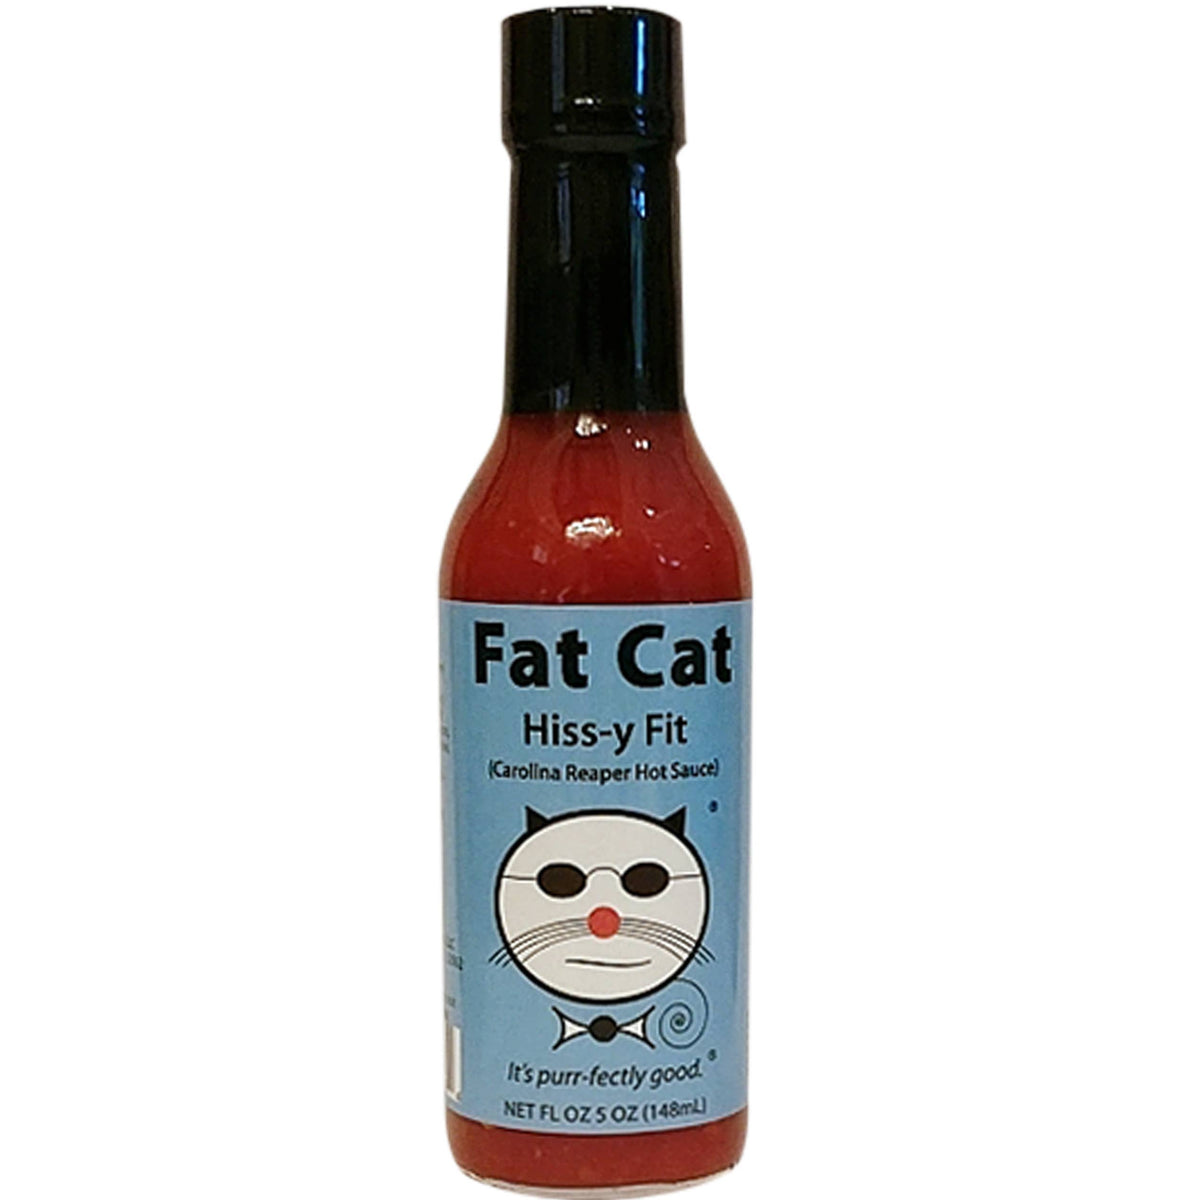 Fat Cat - Hiss-y Fit Carolina Reaper Hot Sauce